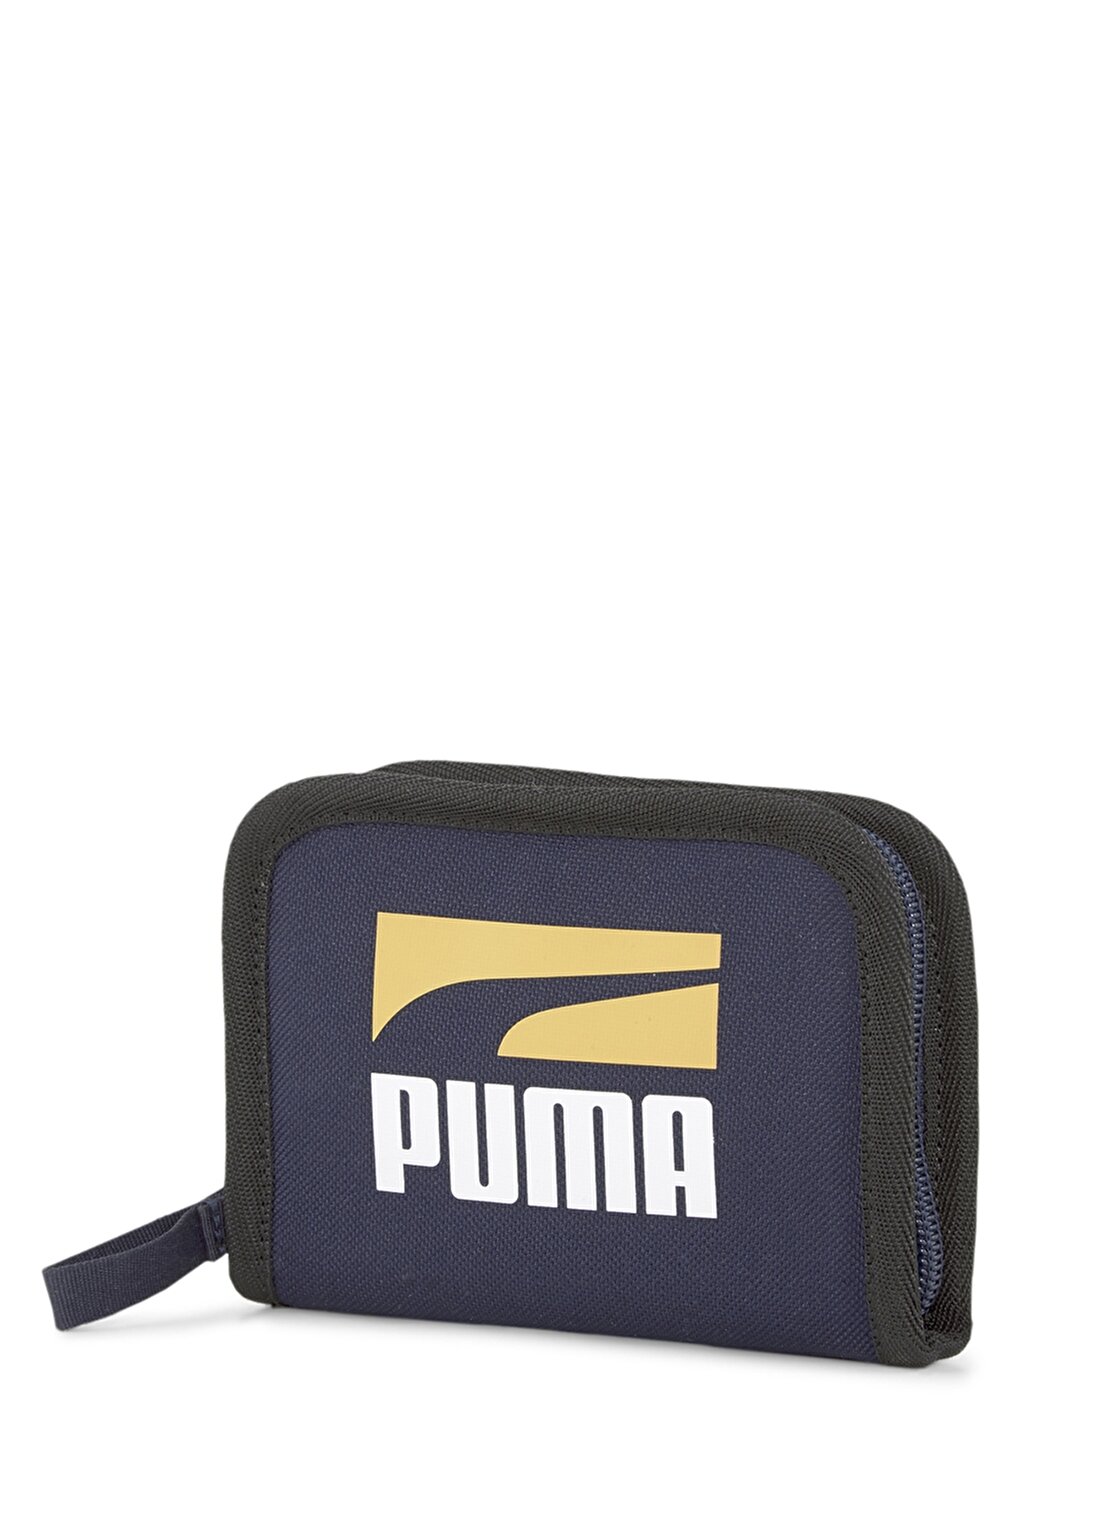 Puma 07886702 Puma Plus Wallet Ii Lacivert Unisex Cüzdan